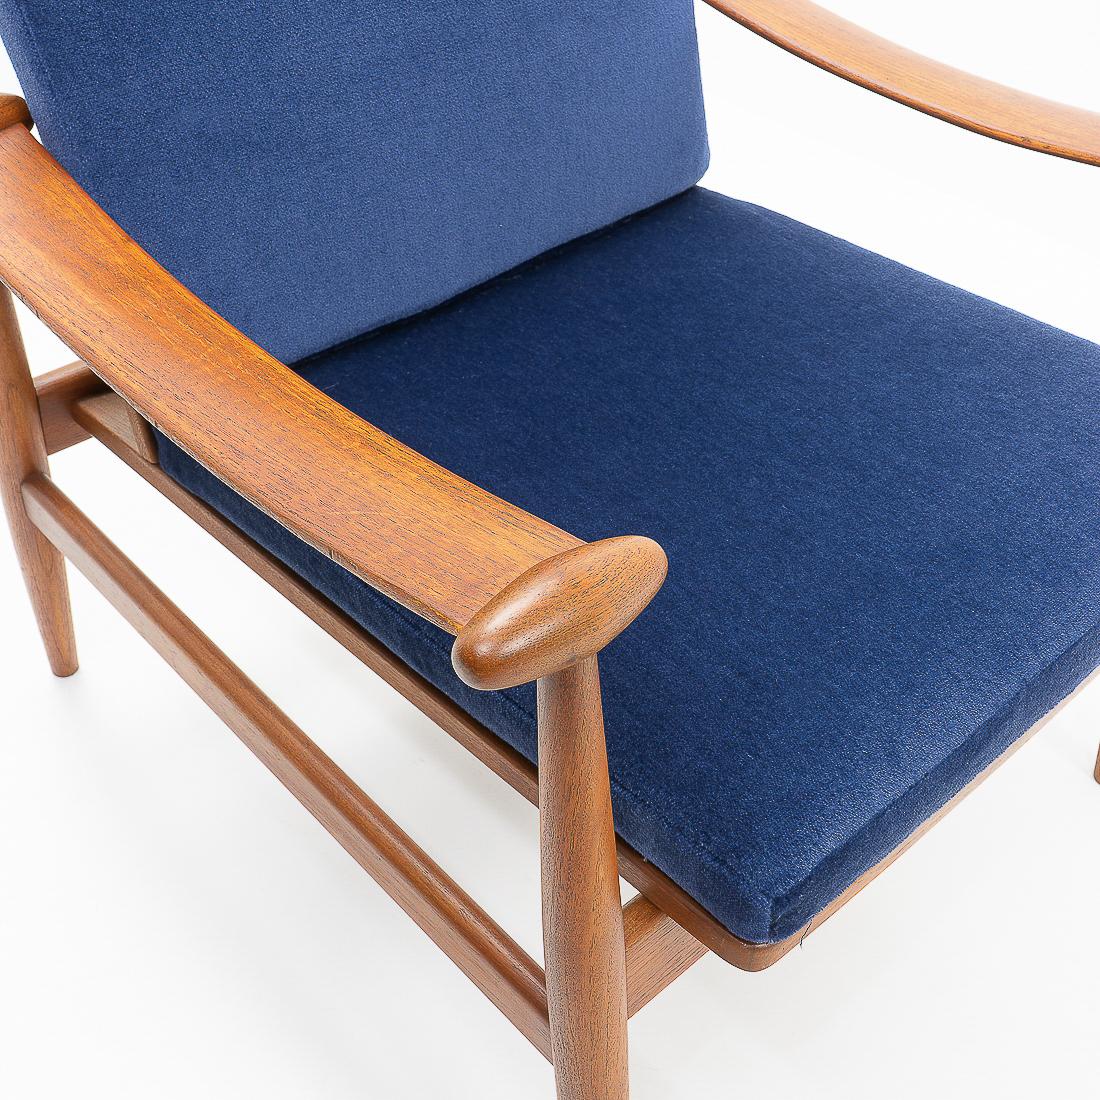 1950s Danish Design Classic Finn Juhl “Spade” Armchair, Upholstered in Mohair For Sale 5